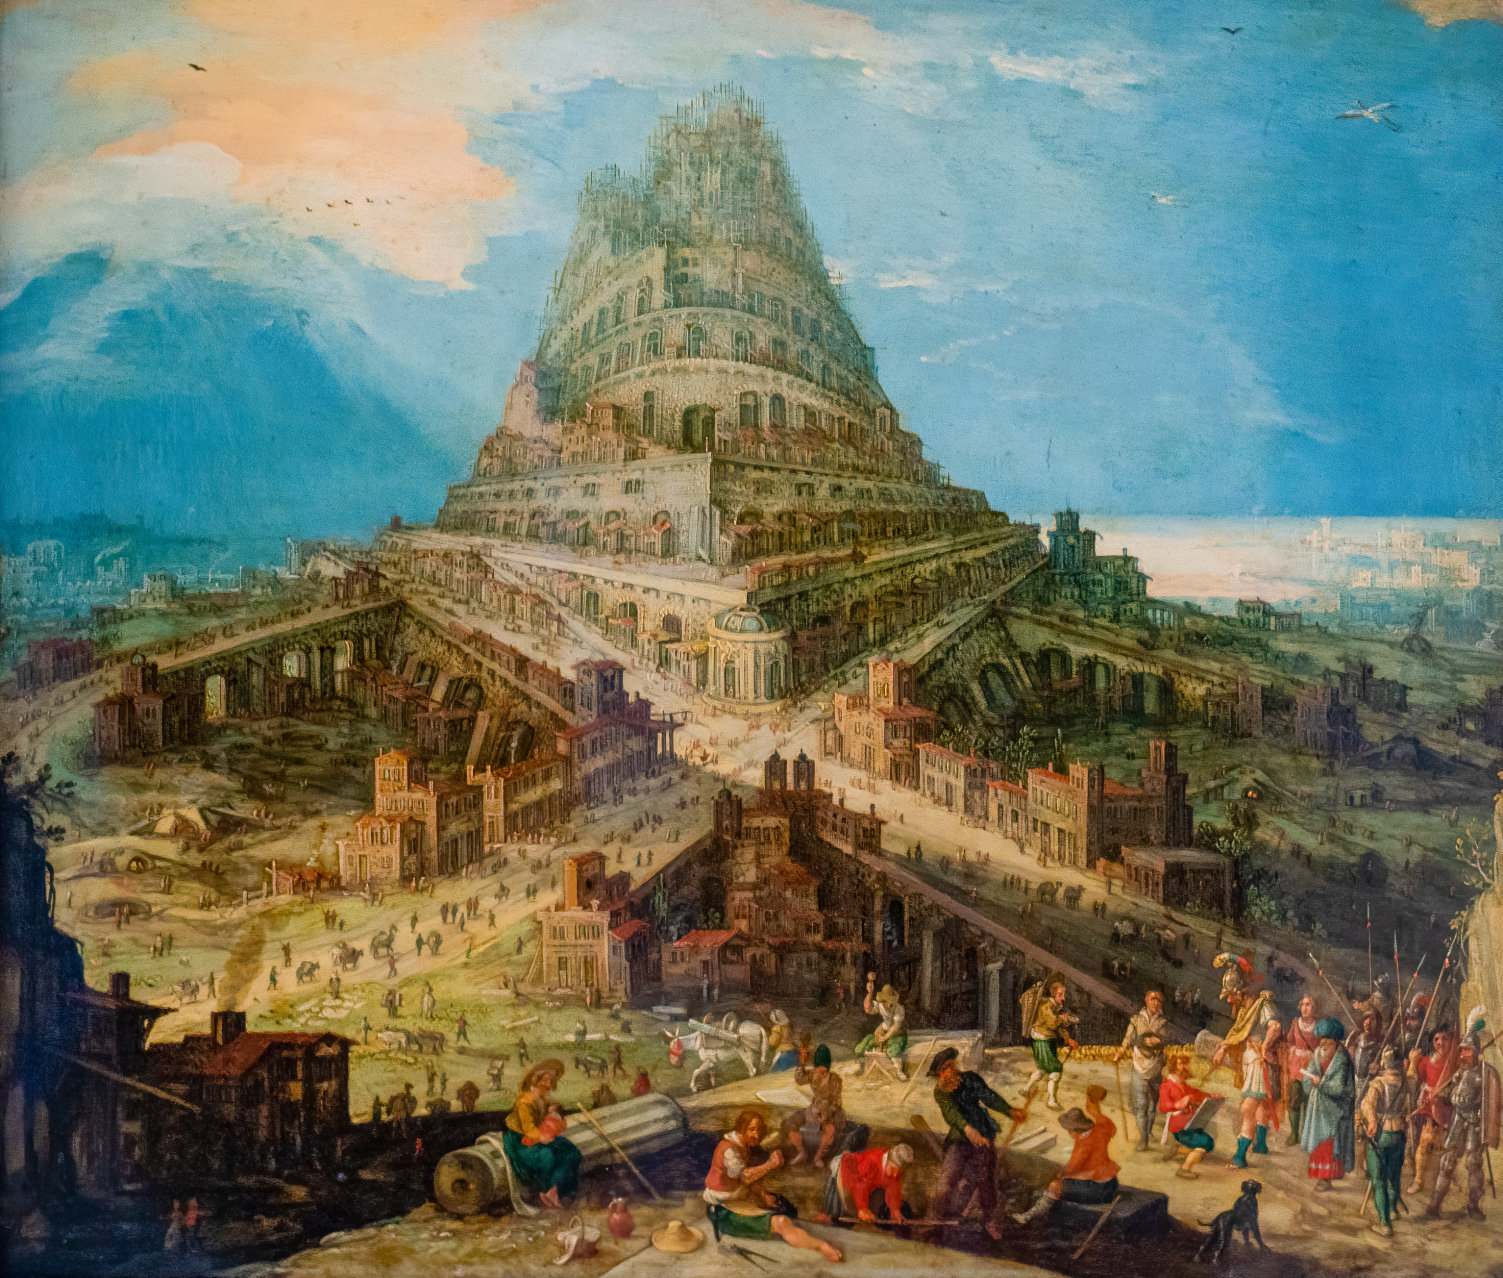 Prvi dokazi o biblijskem babilonskem stolpu so bili odkriti 2